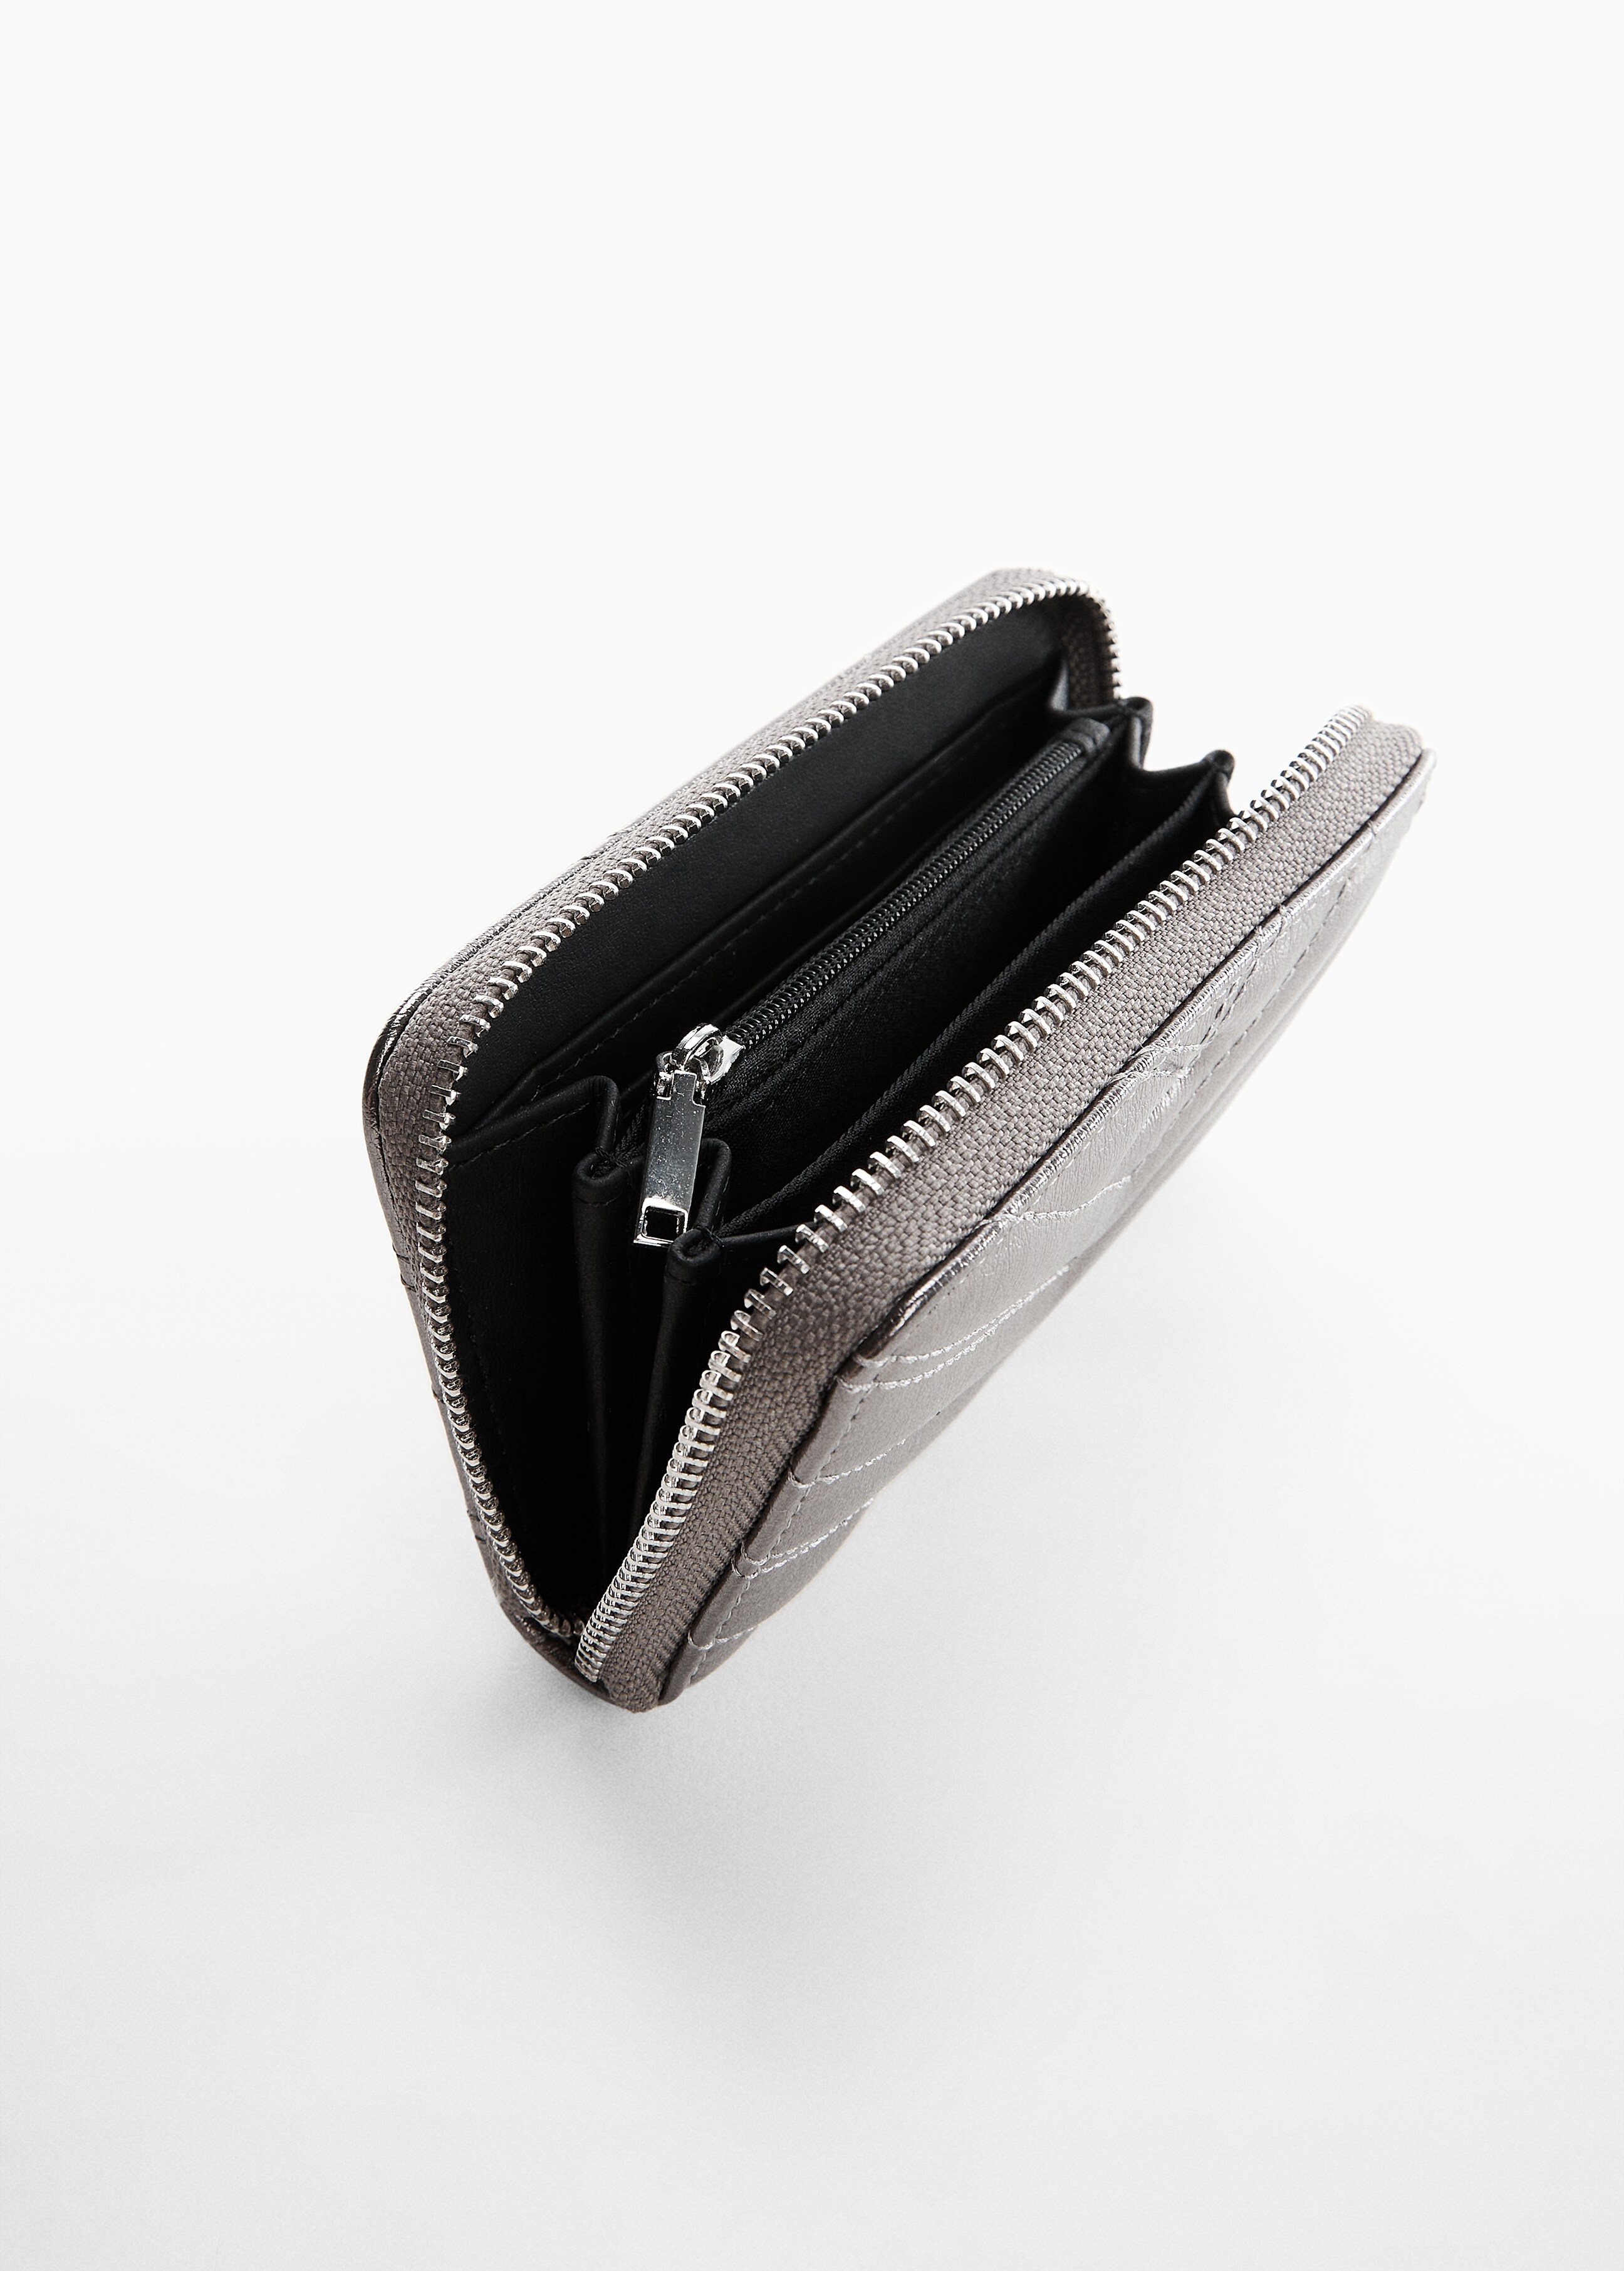 Padded metallic wallet - Medium plane